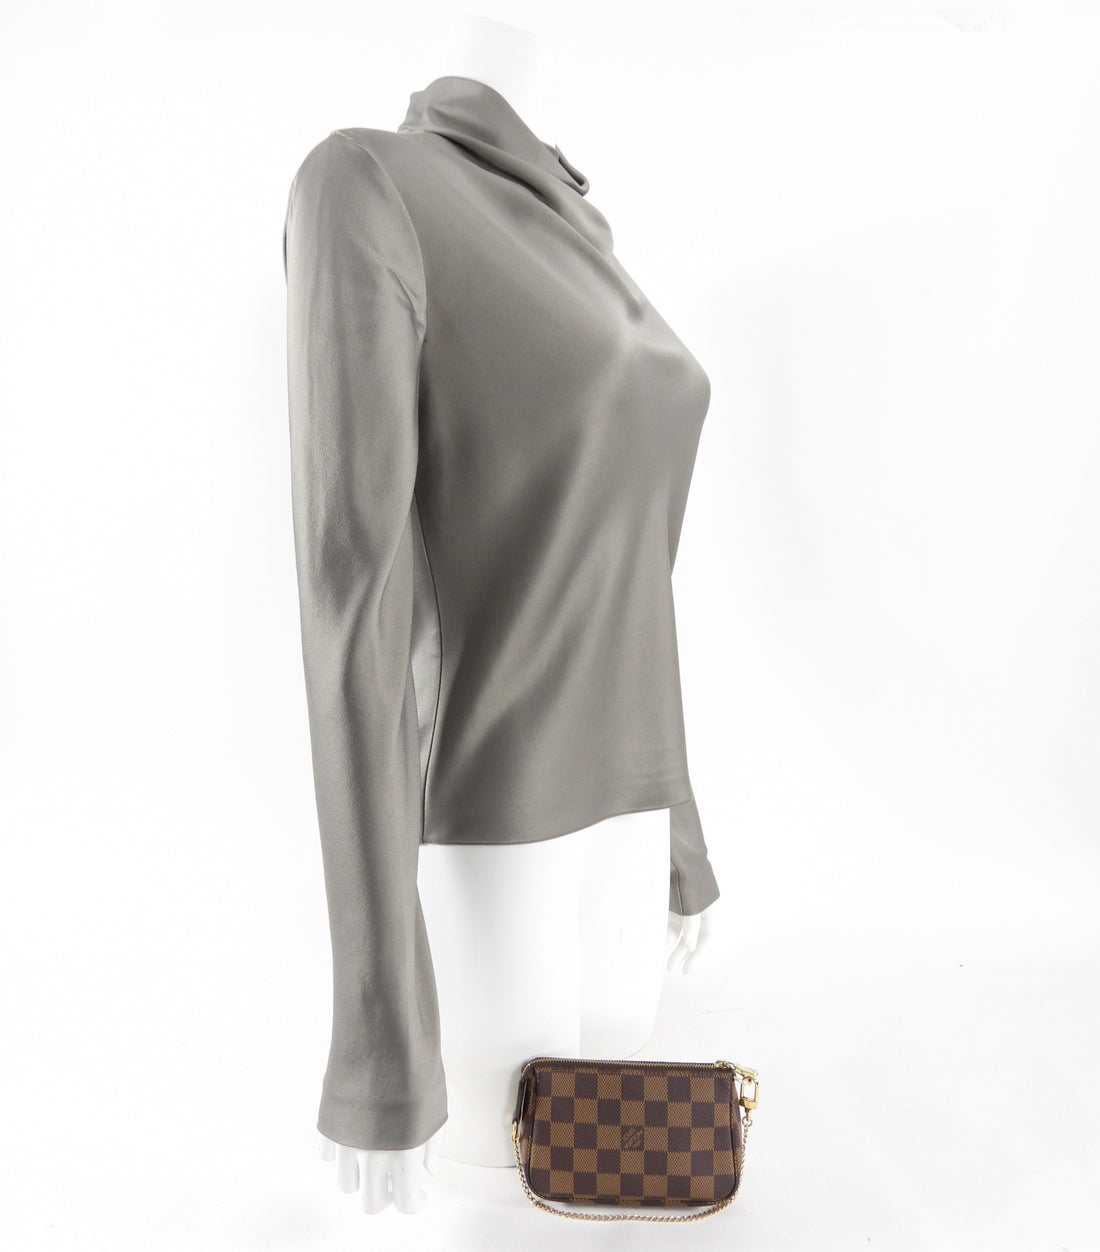 Louis Vuitton Damier Ebene Pochette Accessoires Bag – I MISS YOU VINTAGE